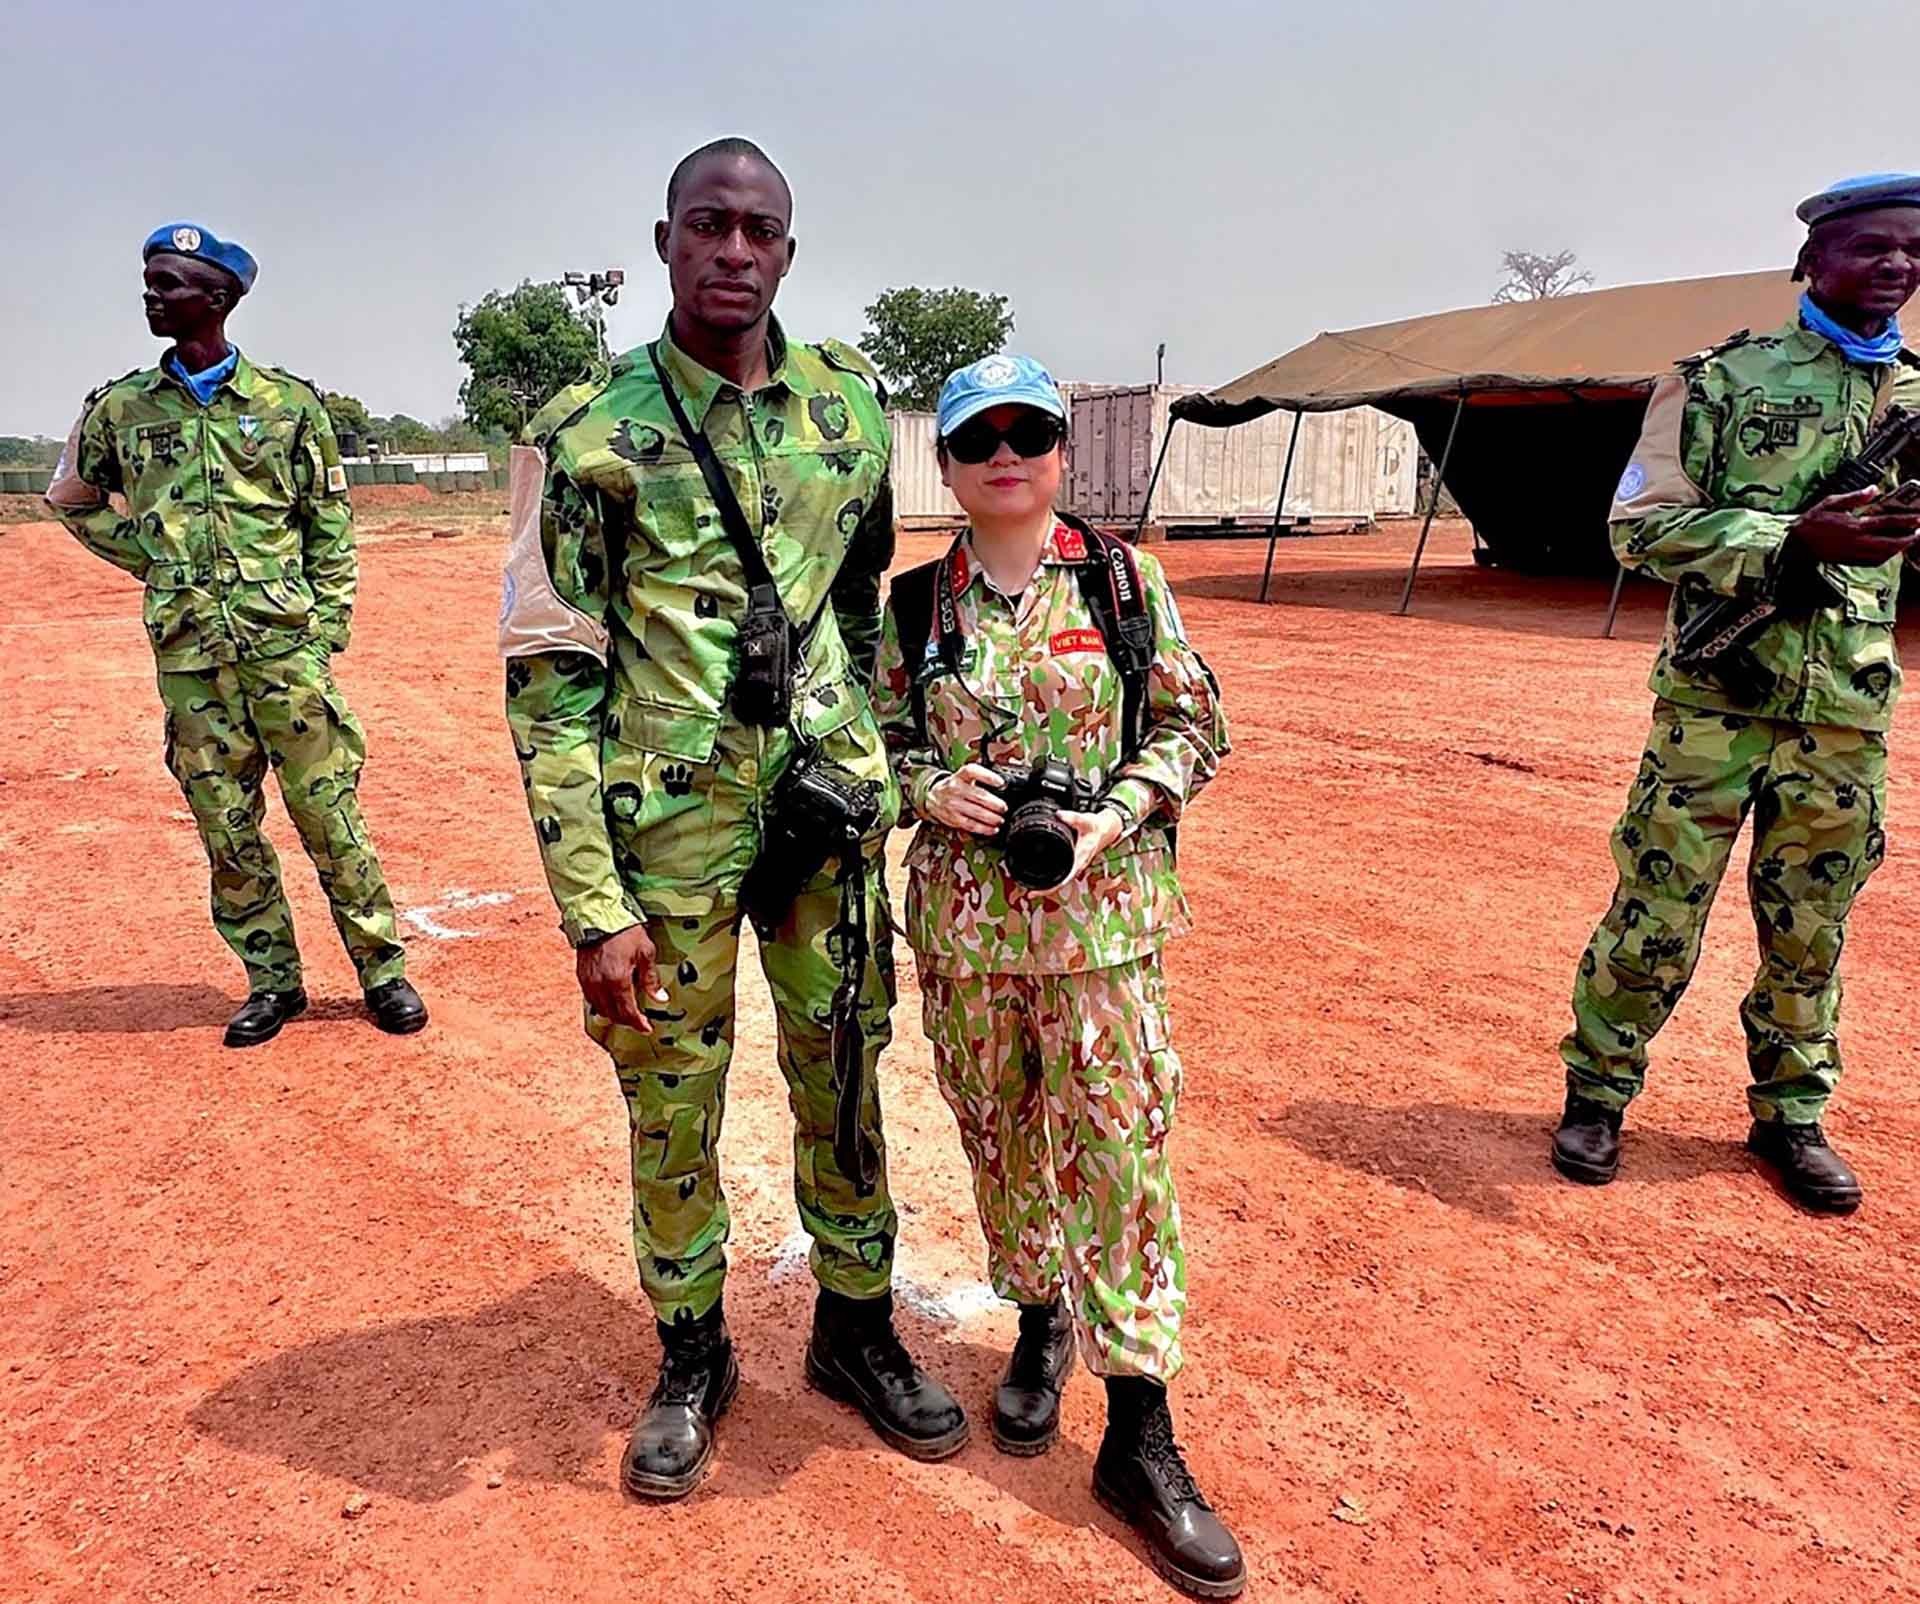 Đại úy Phương Linh cùng bạn bè quốc tế trong một lần công tác thực địa tại Tiểu đoàn Cameroon. (Nguồn: Cục GHBH Việt Nam)